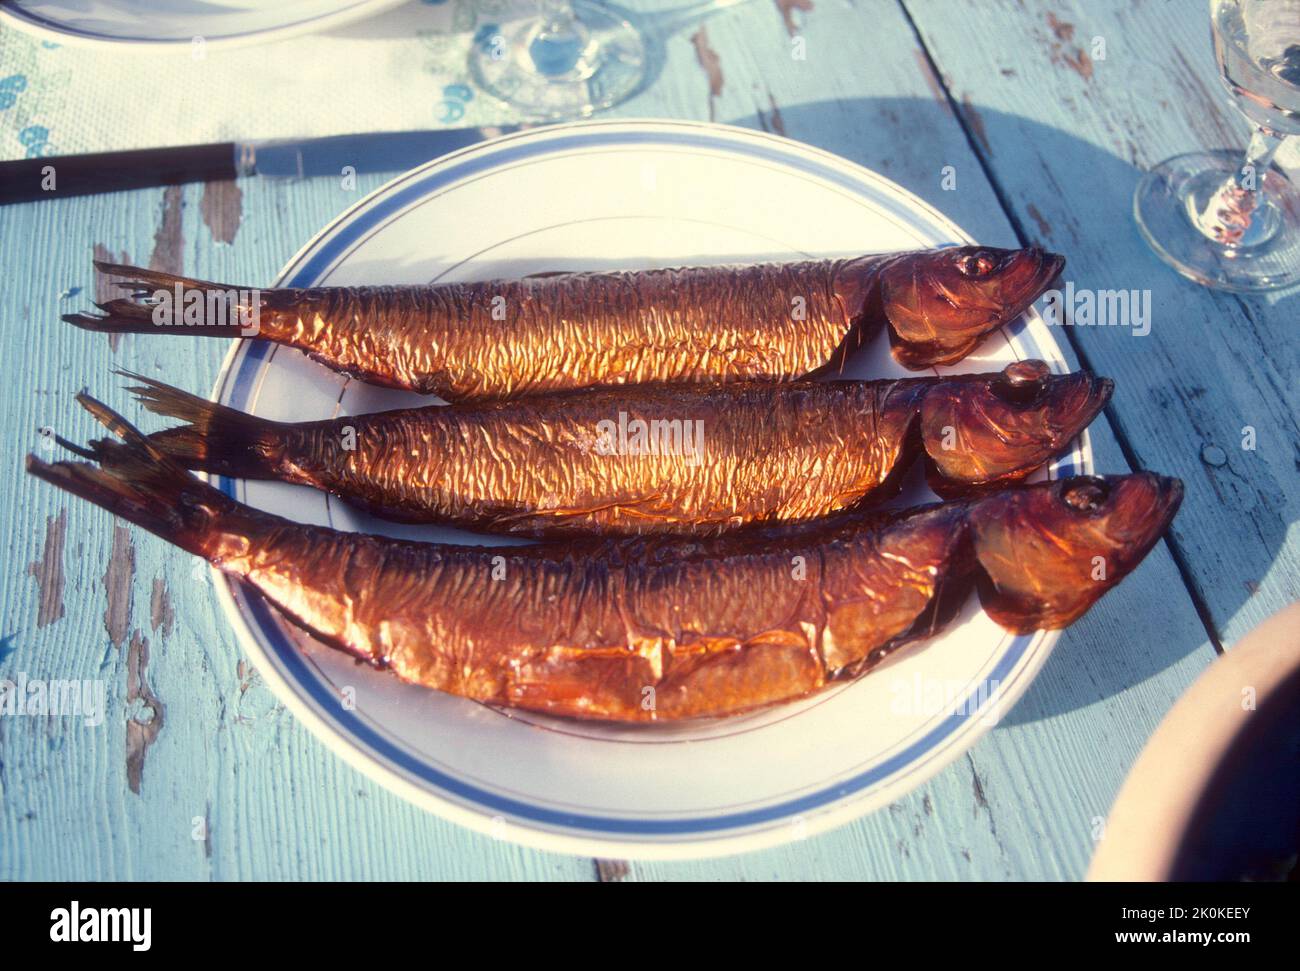 DANIMARCA Bornholm pesce affumicato direttamente dal fumo ai piatti del pranzo turistico Foto Stock